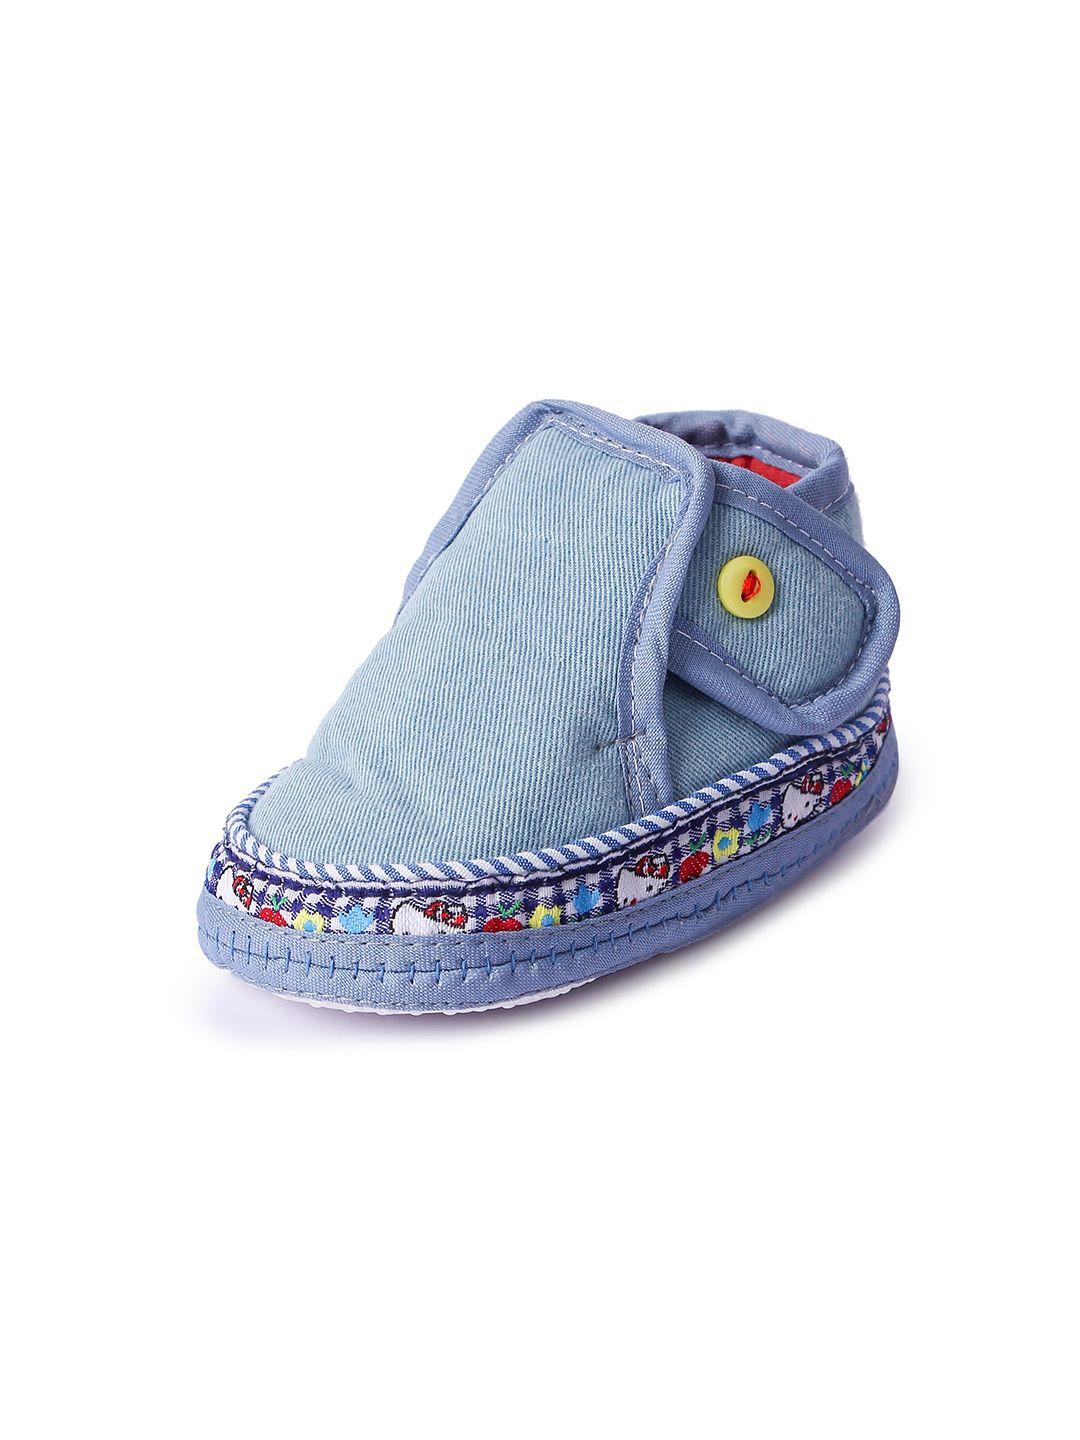 butterthief unisex infant kids blue shoe-style sandals